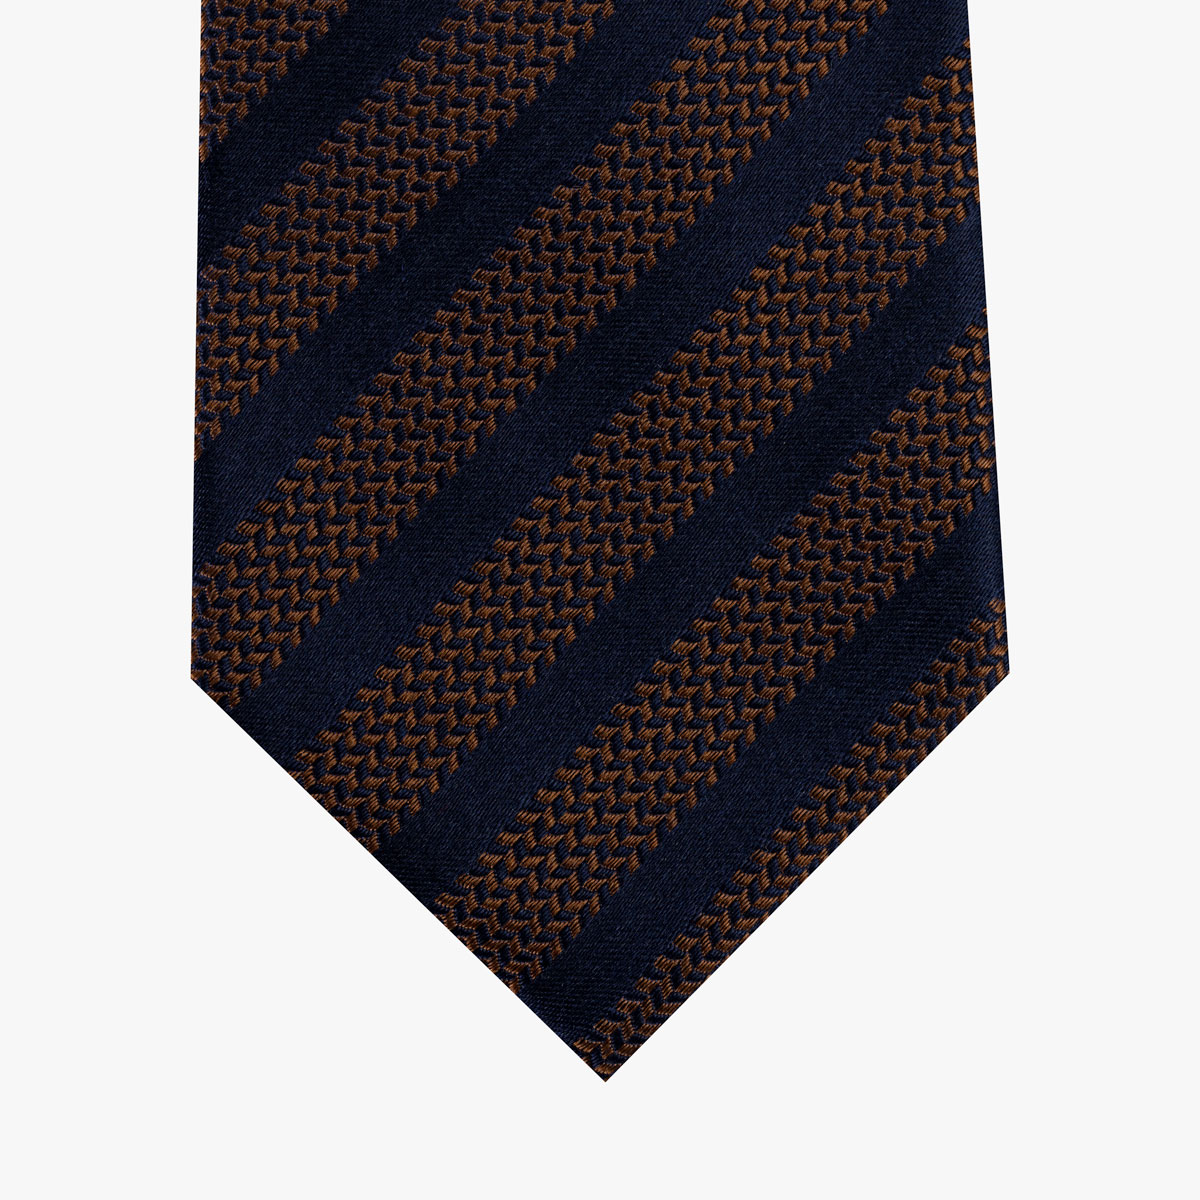 Krawatte mit Streifenmuster in braun dunkelblau